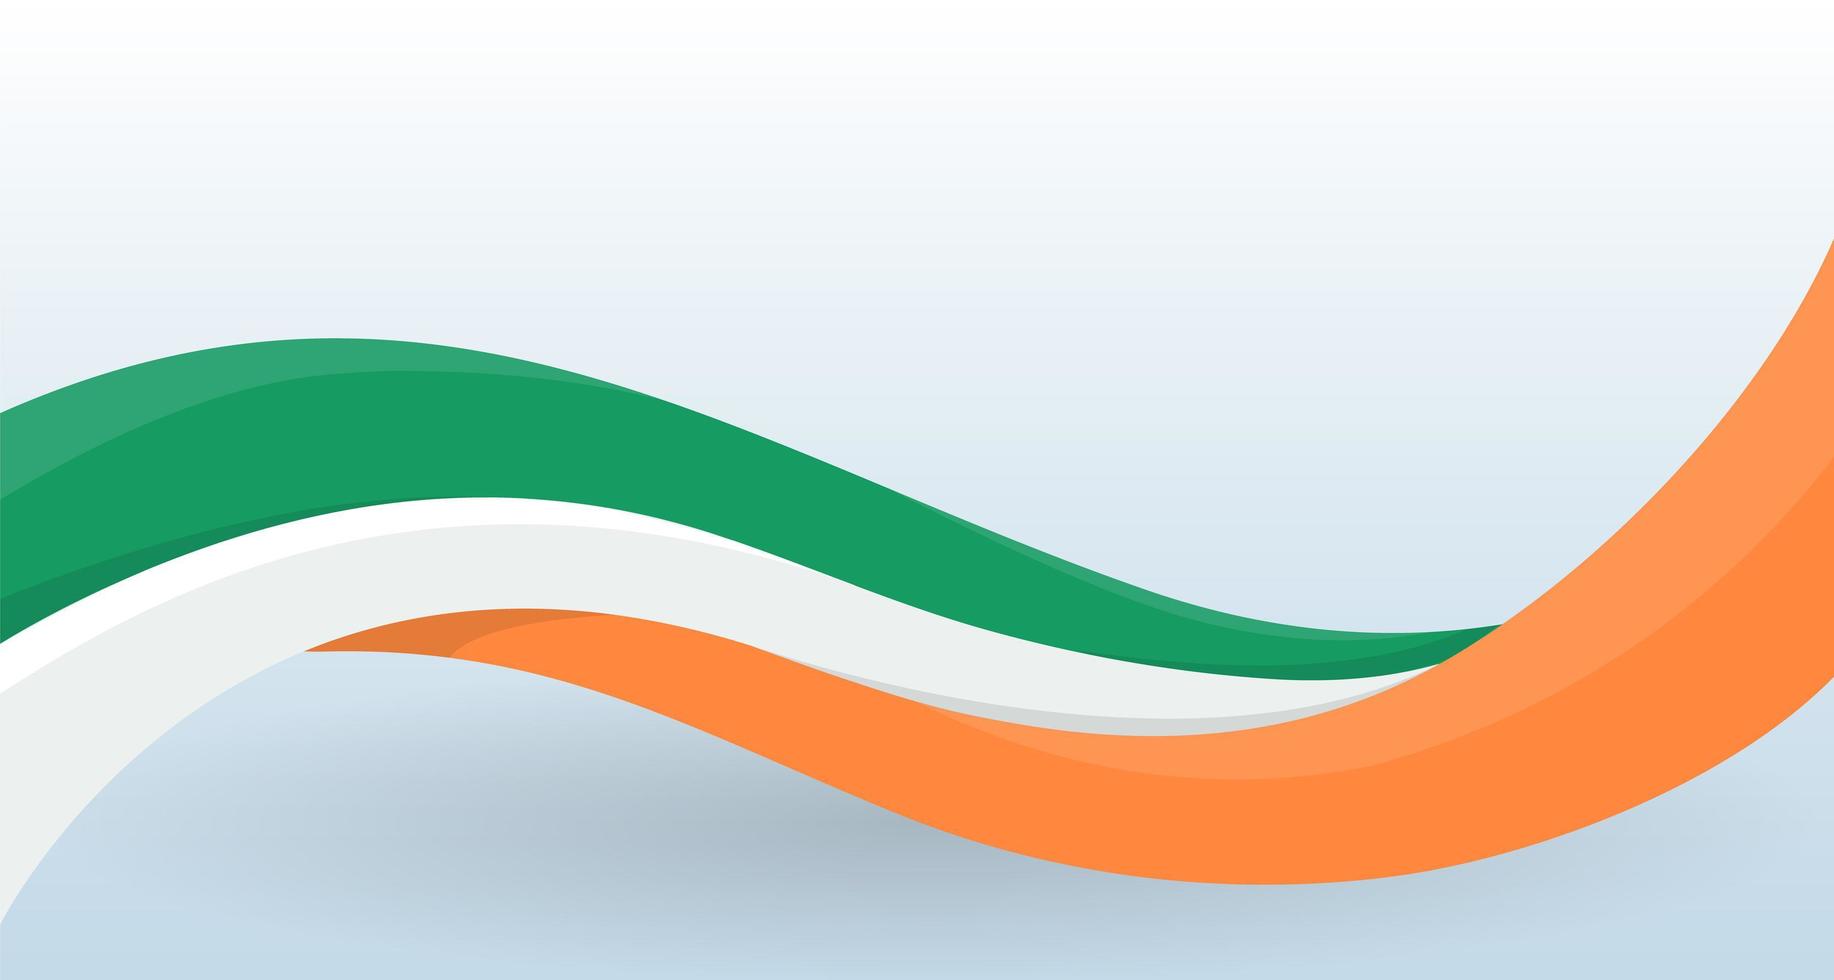 Irlanda acenando a bandeira nacional. forma incomum moderna. modelo de design para decoração de panfleto e cartão, cartaz, banner e logotipo. ilustração isolada do vetor. vetor